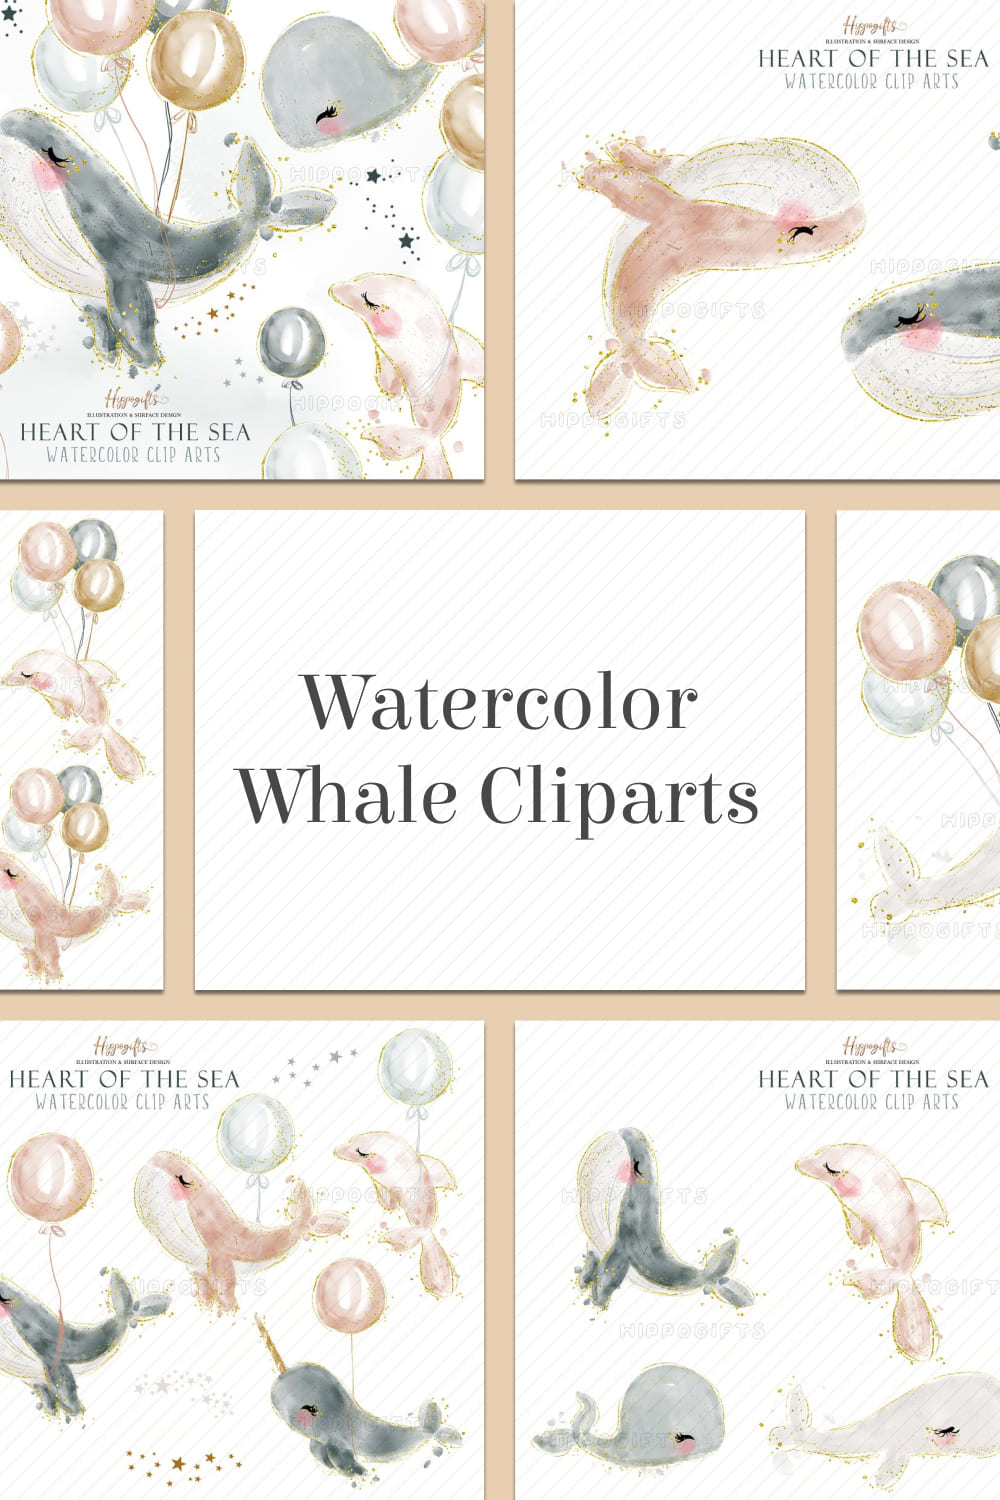 Watercolor Whale Cliparts Set pinterest image.